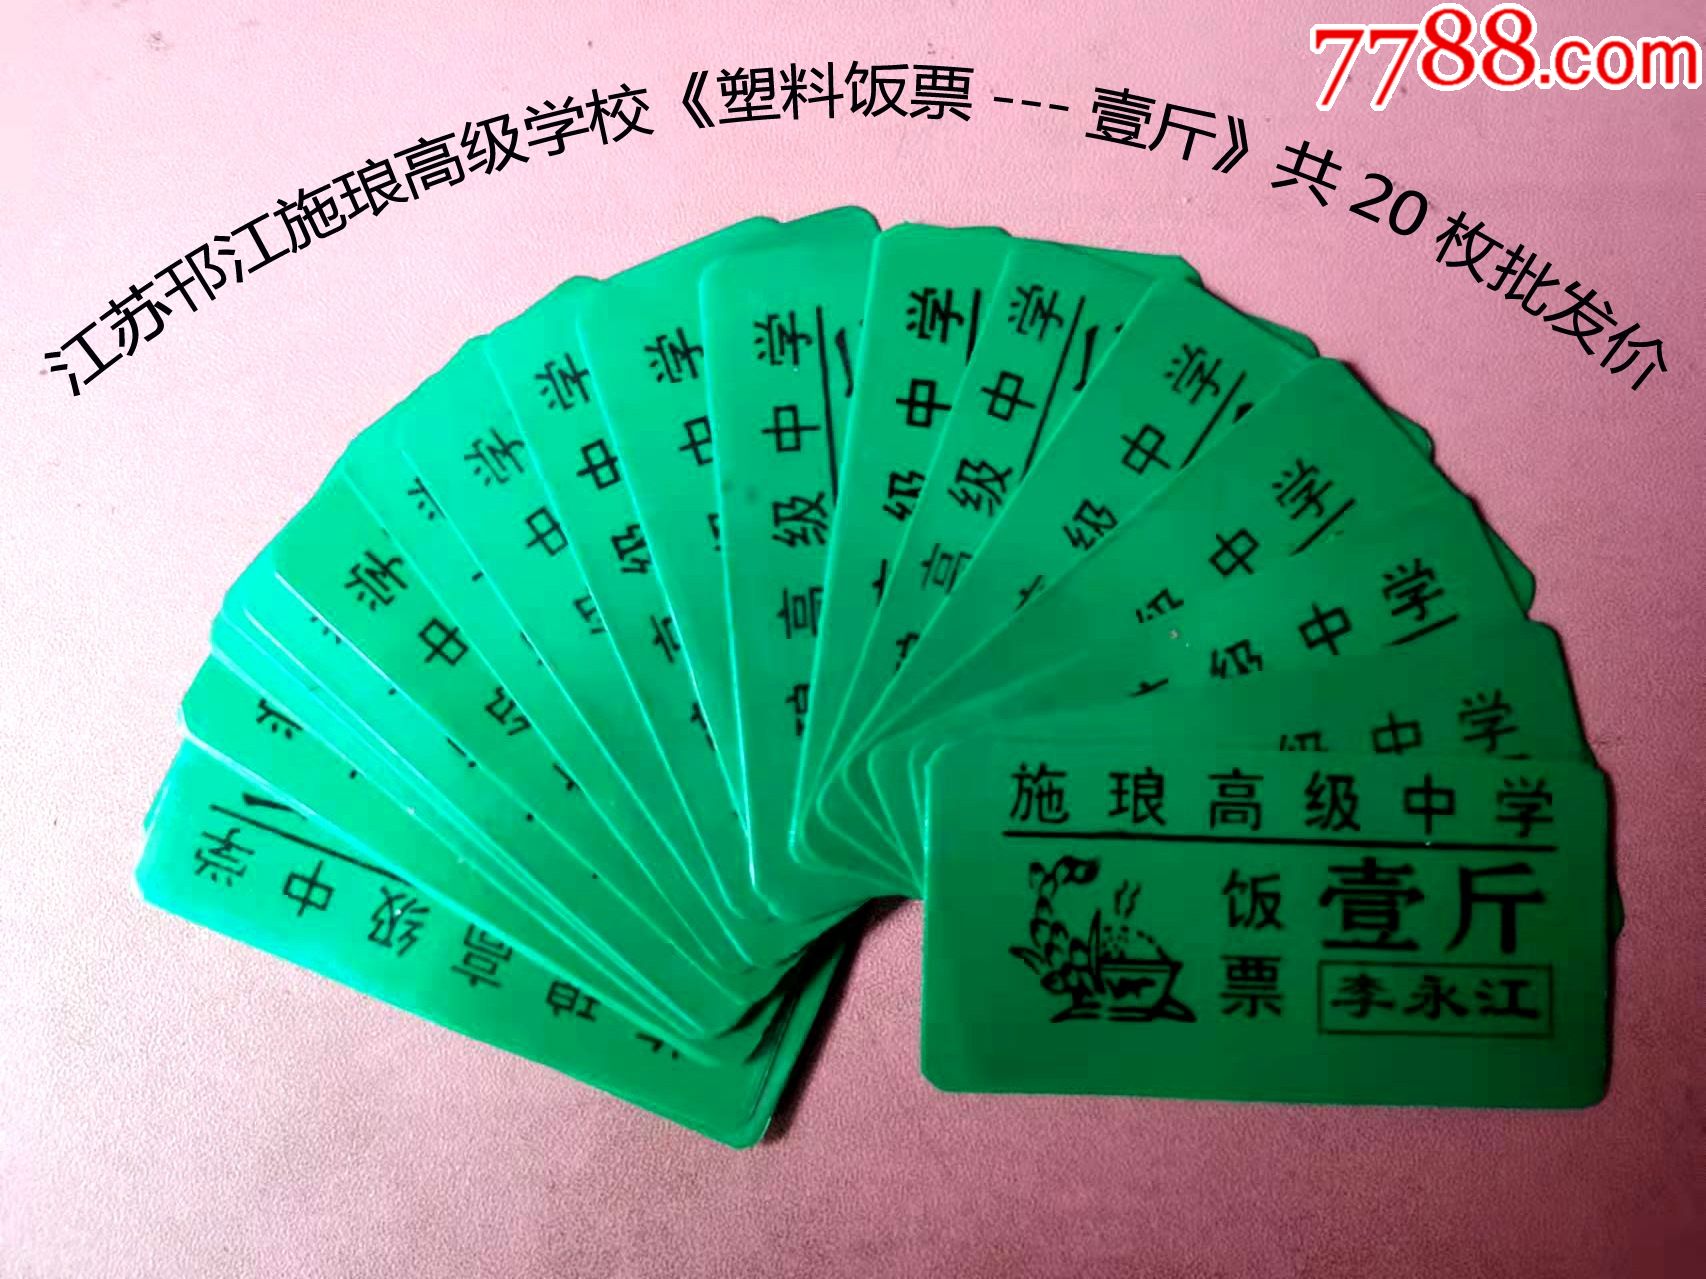 江苏邗江施琅高级学校塑料饭票壹斤平均3角一枚共20枚批发价